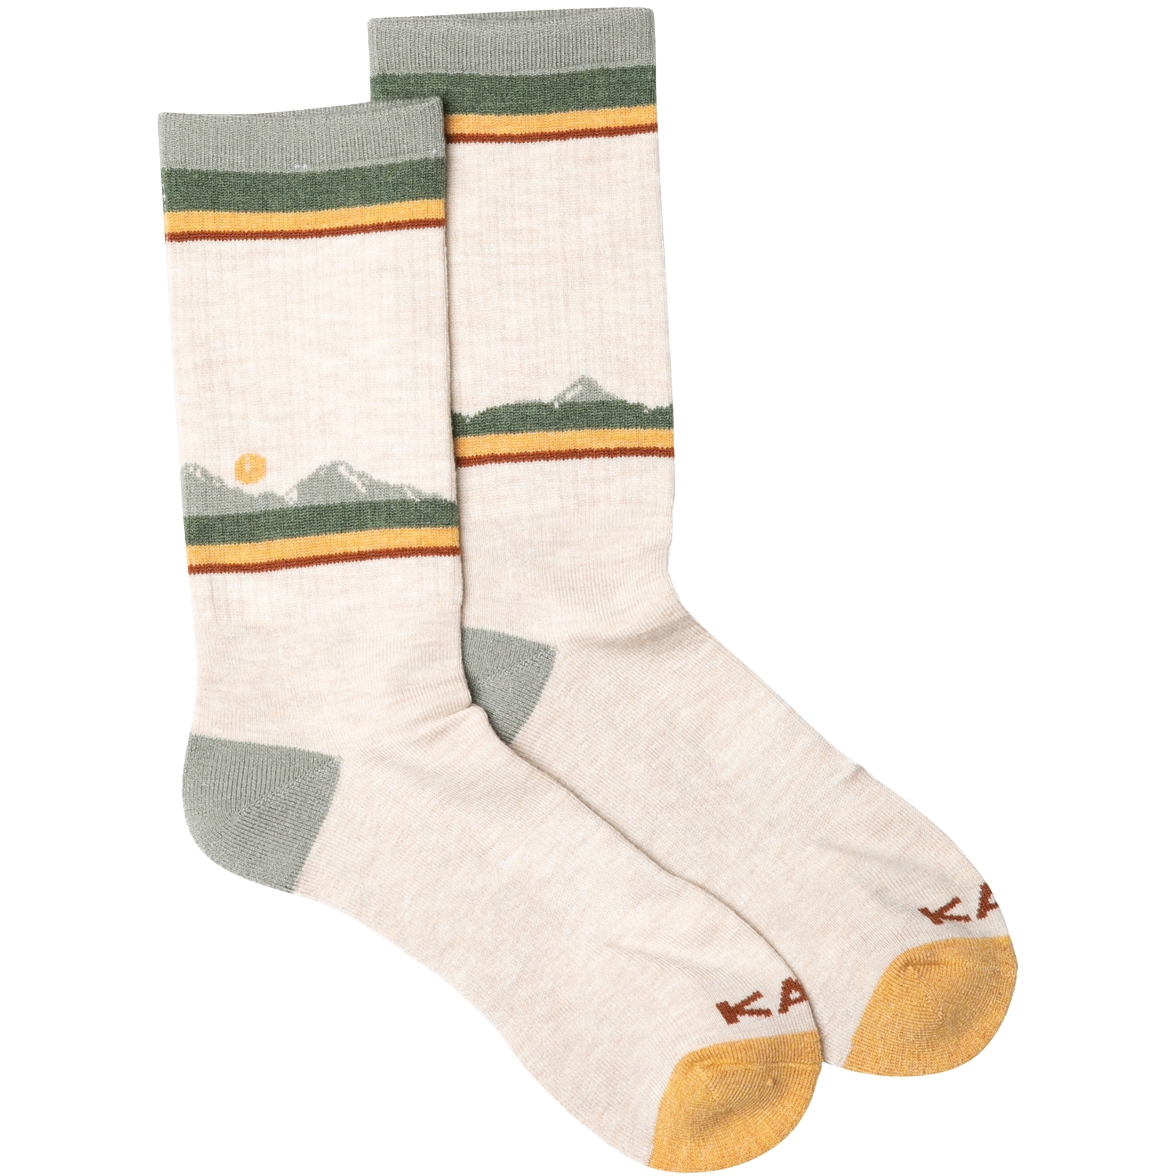 Produktbild von KAVU Moonwalk Socken - Woodland Range